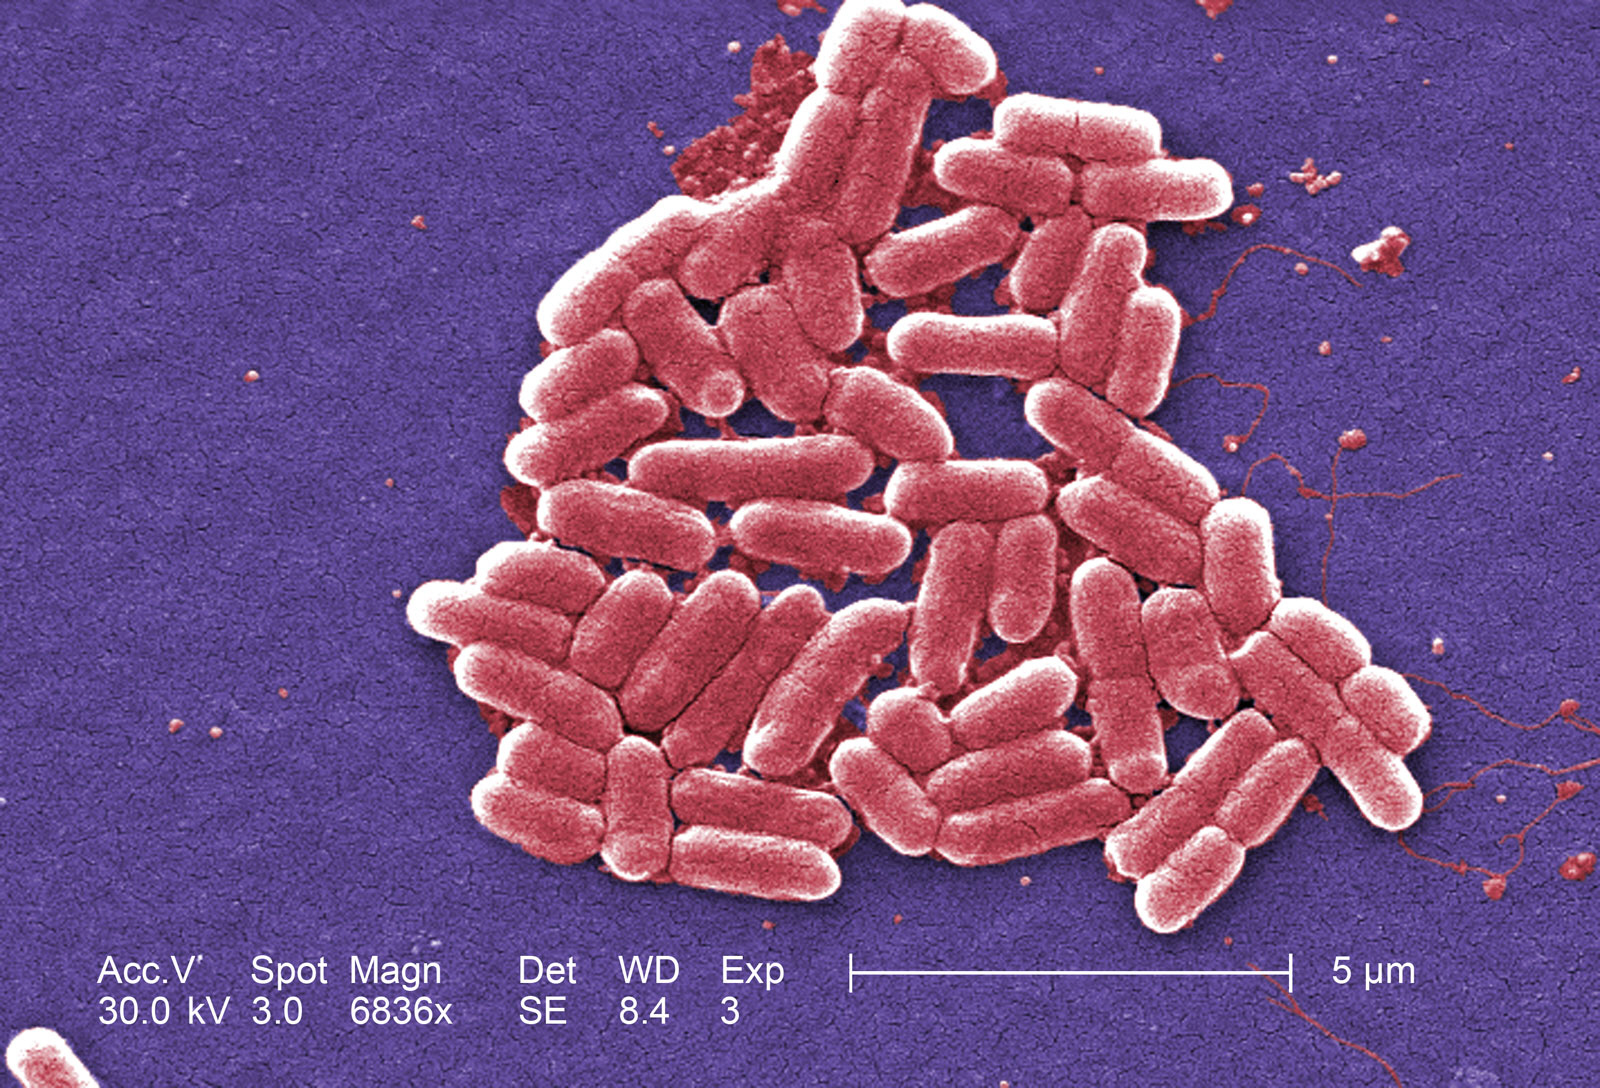 røre ved kontrol Imponerende e-coli bakterier